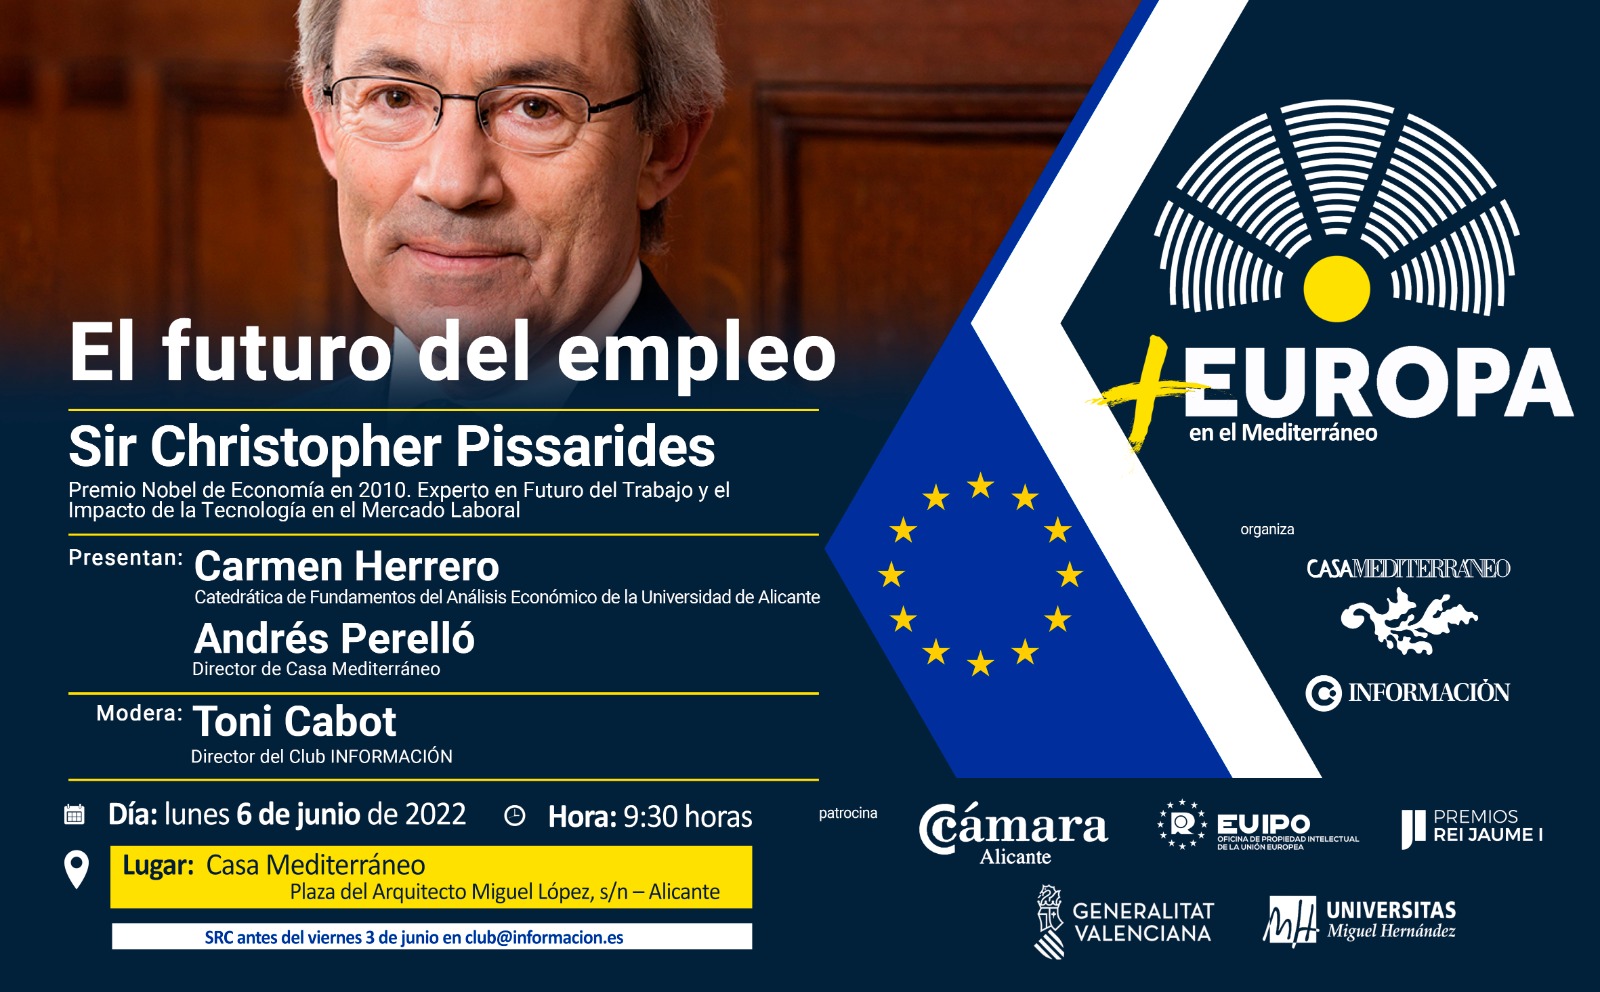 FORO +EUROPA EN EL MEDITERRÁNEO: “El futuro del empleo”